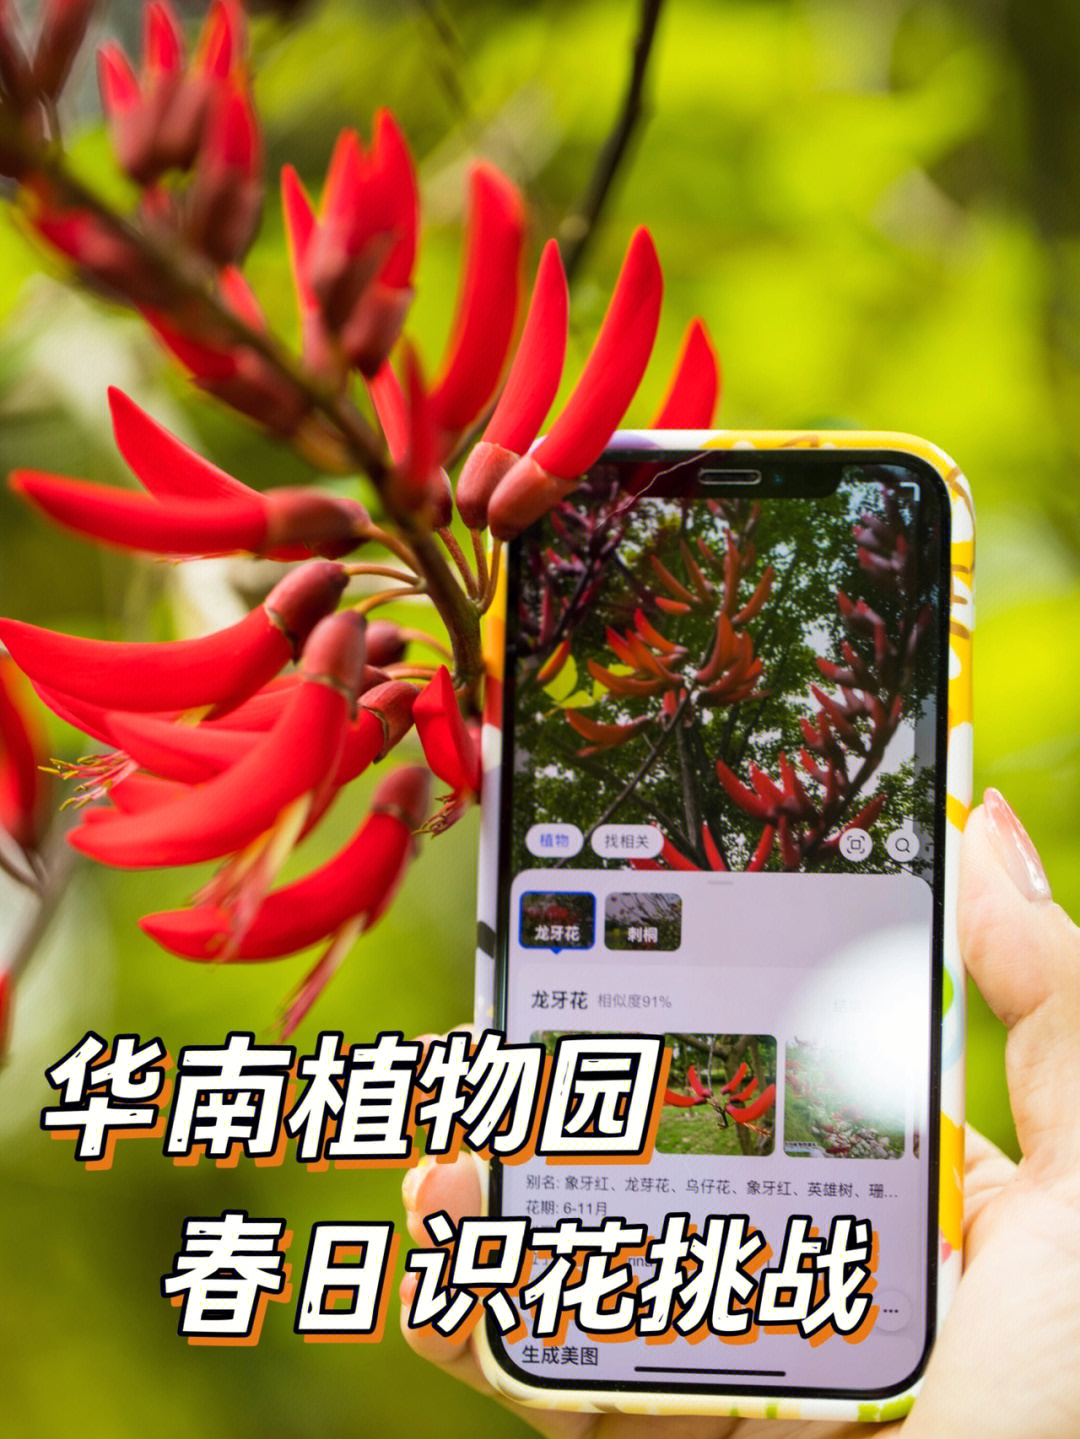 华南植物园植物介绍图片